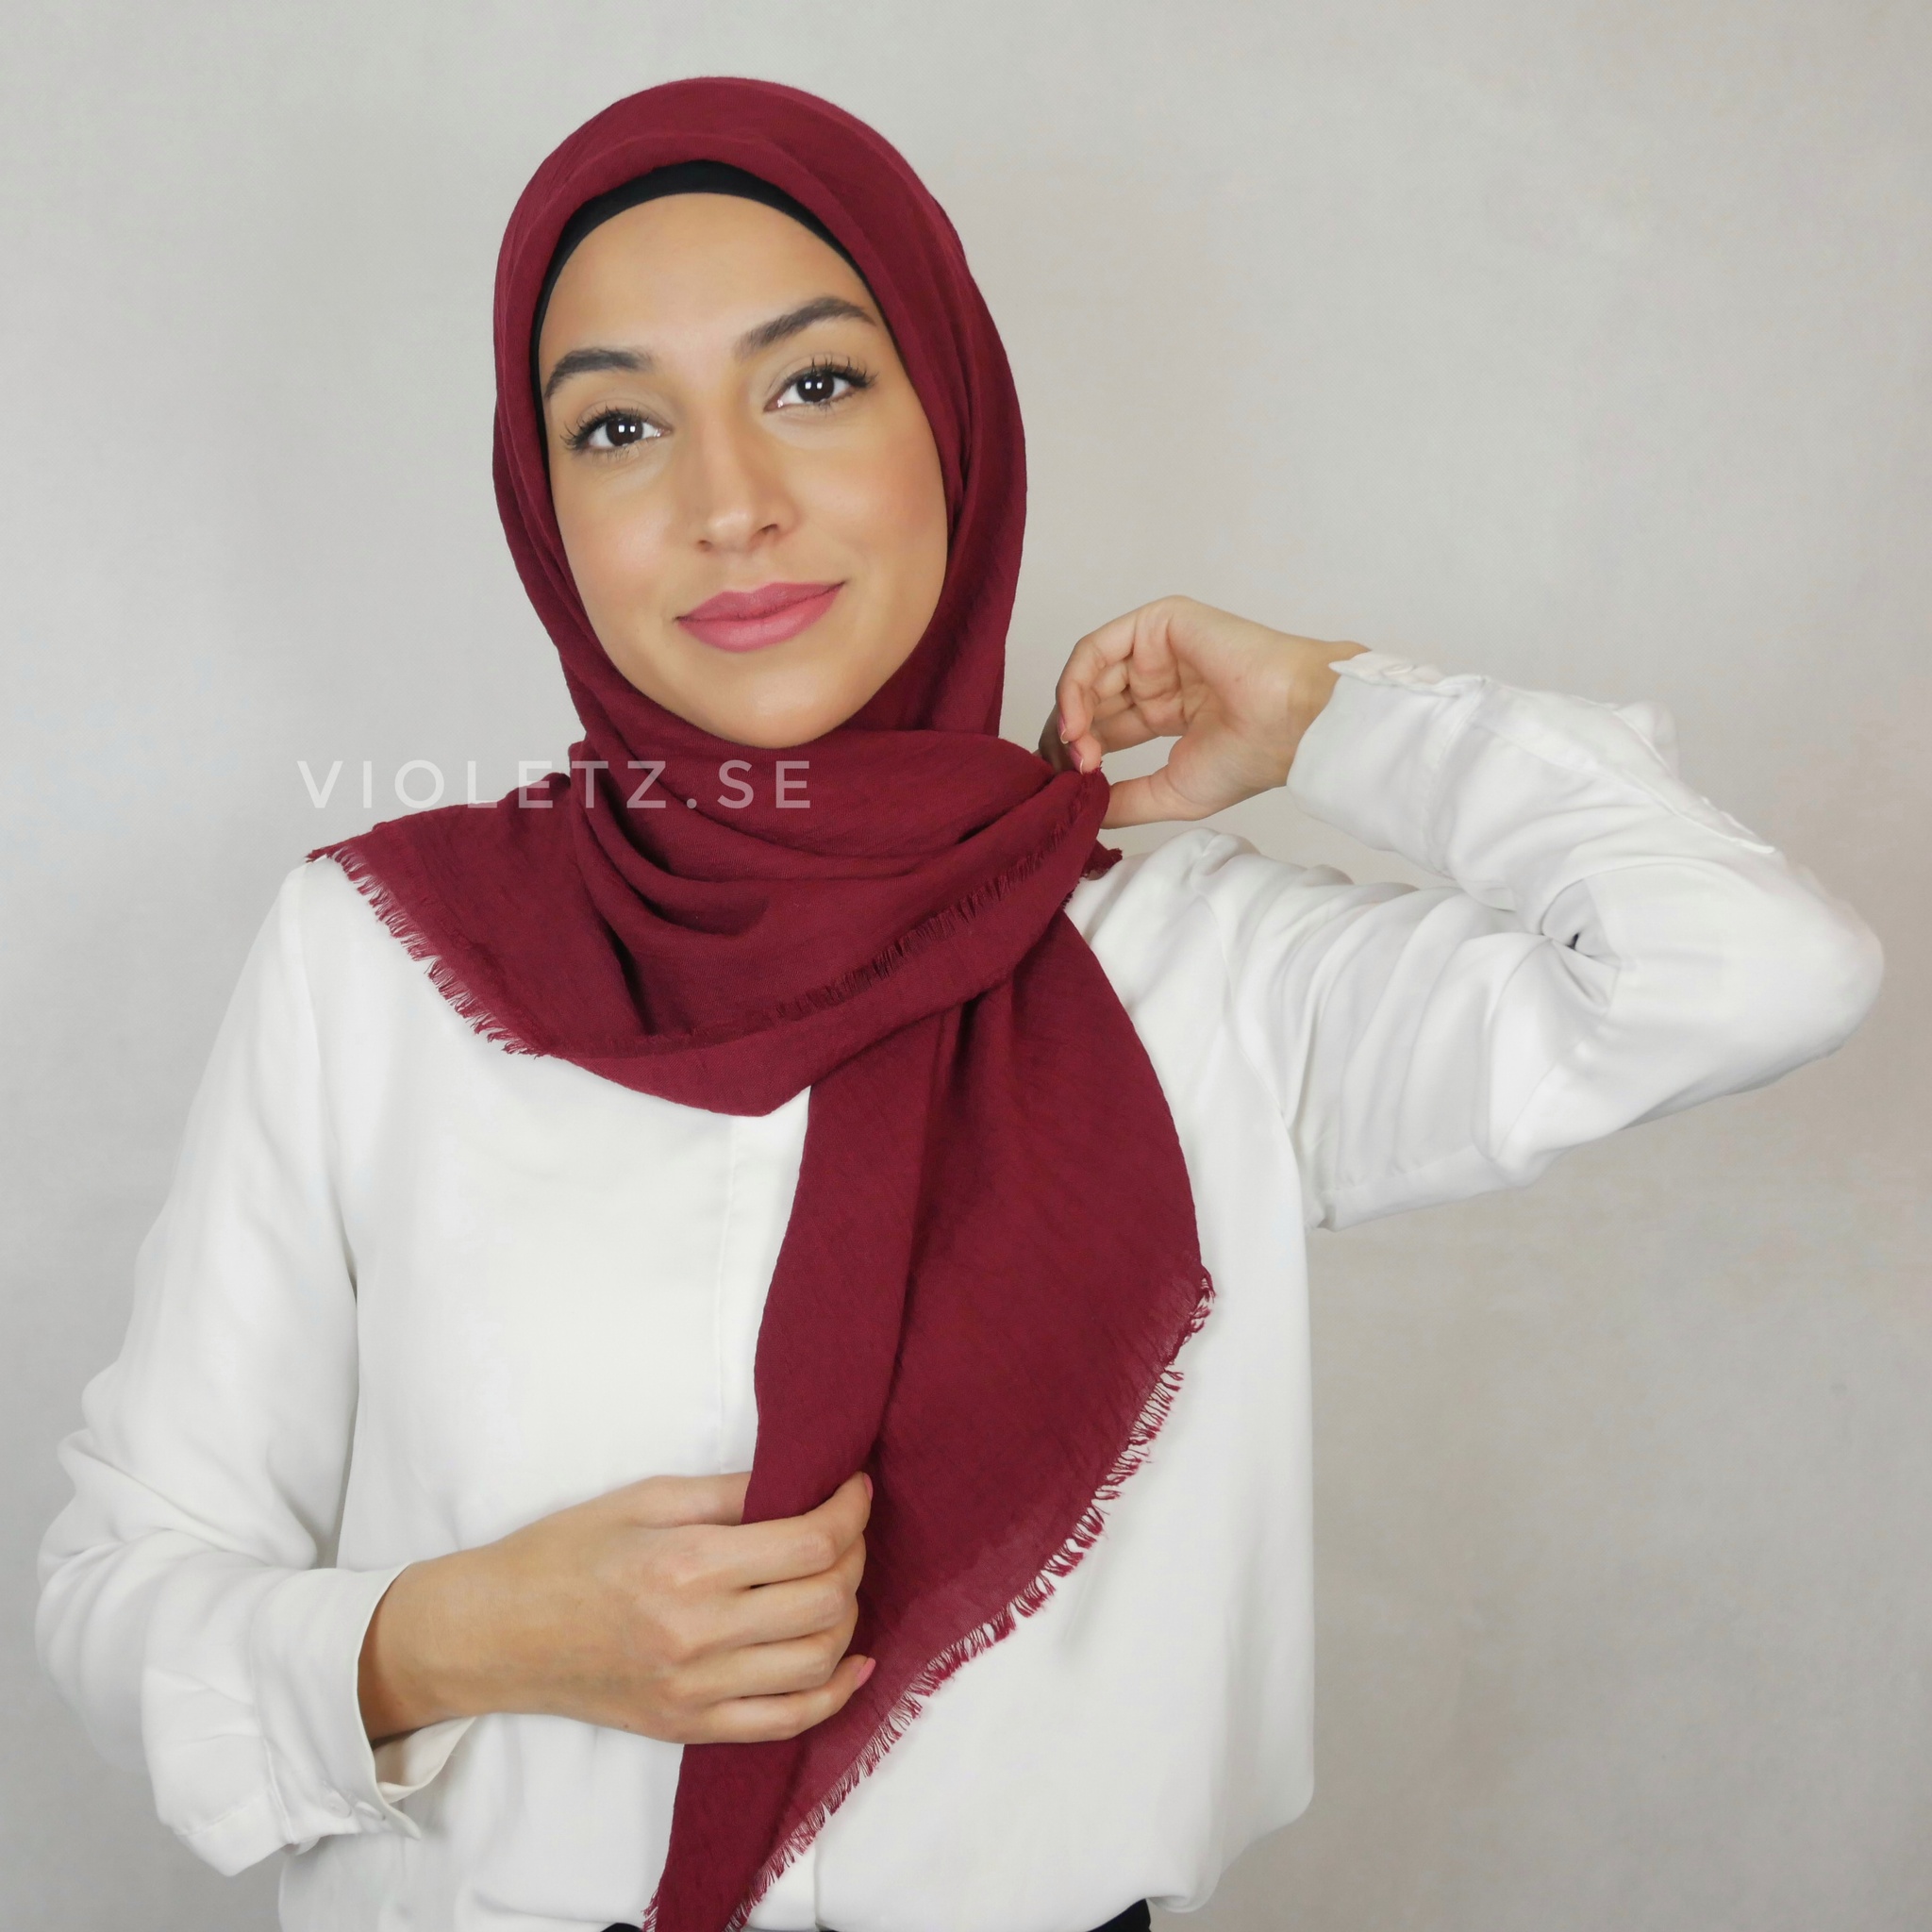 Jazz kvadratisk Hijab - Viskos 105x105cm -  TIDIGARE PRIS 160 SEK